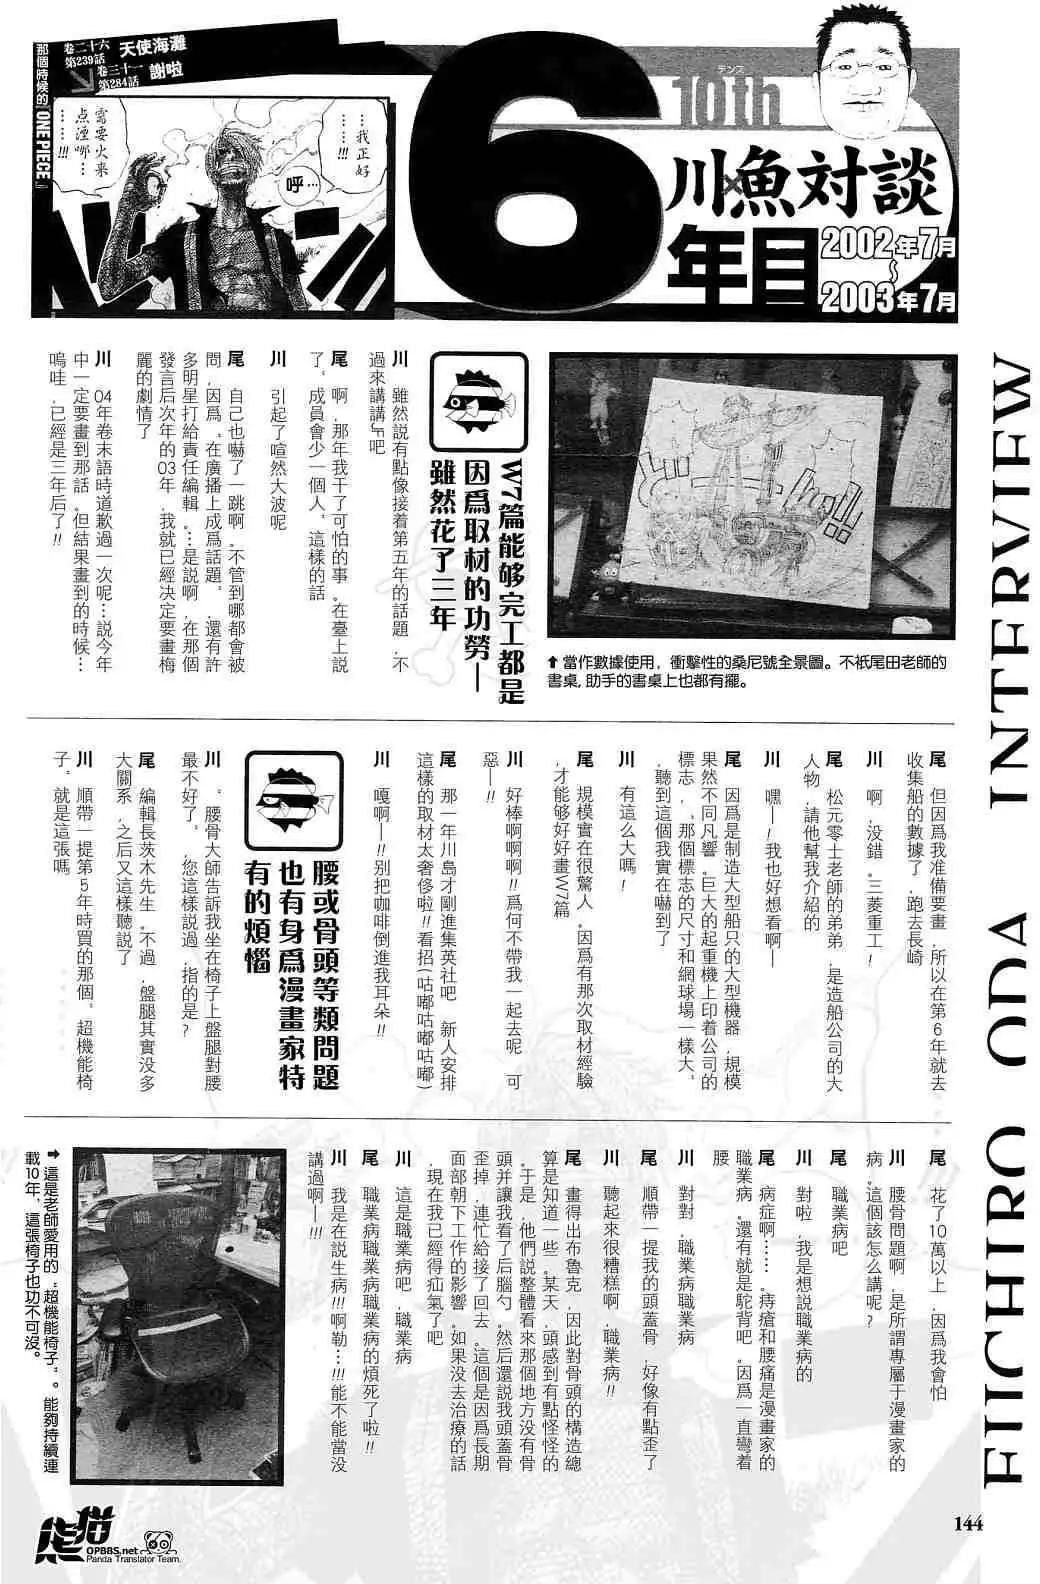 ONE PIECE航海王 - 海贼王10周年增刊完全版(1/2) - 8